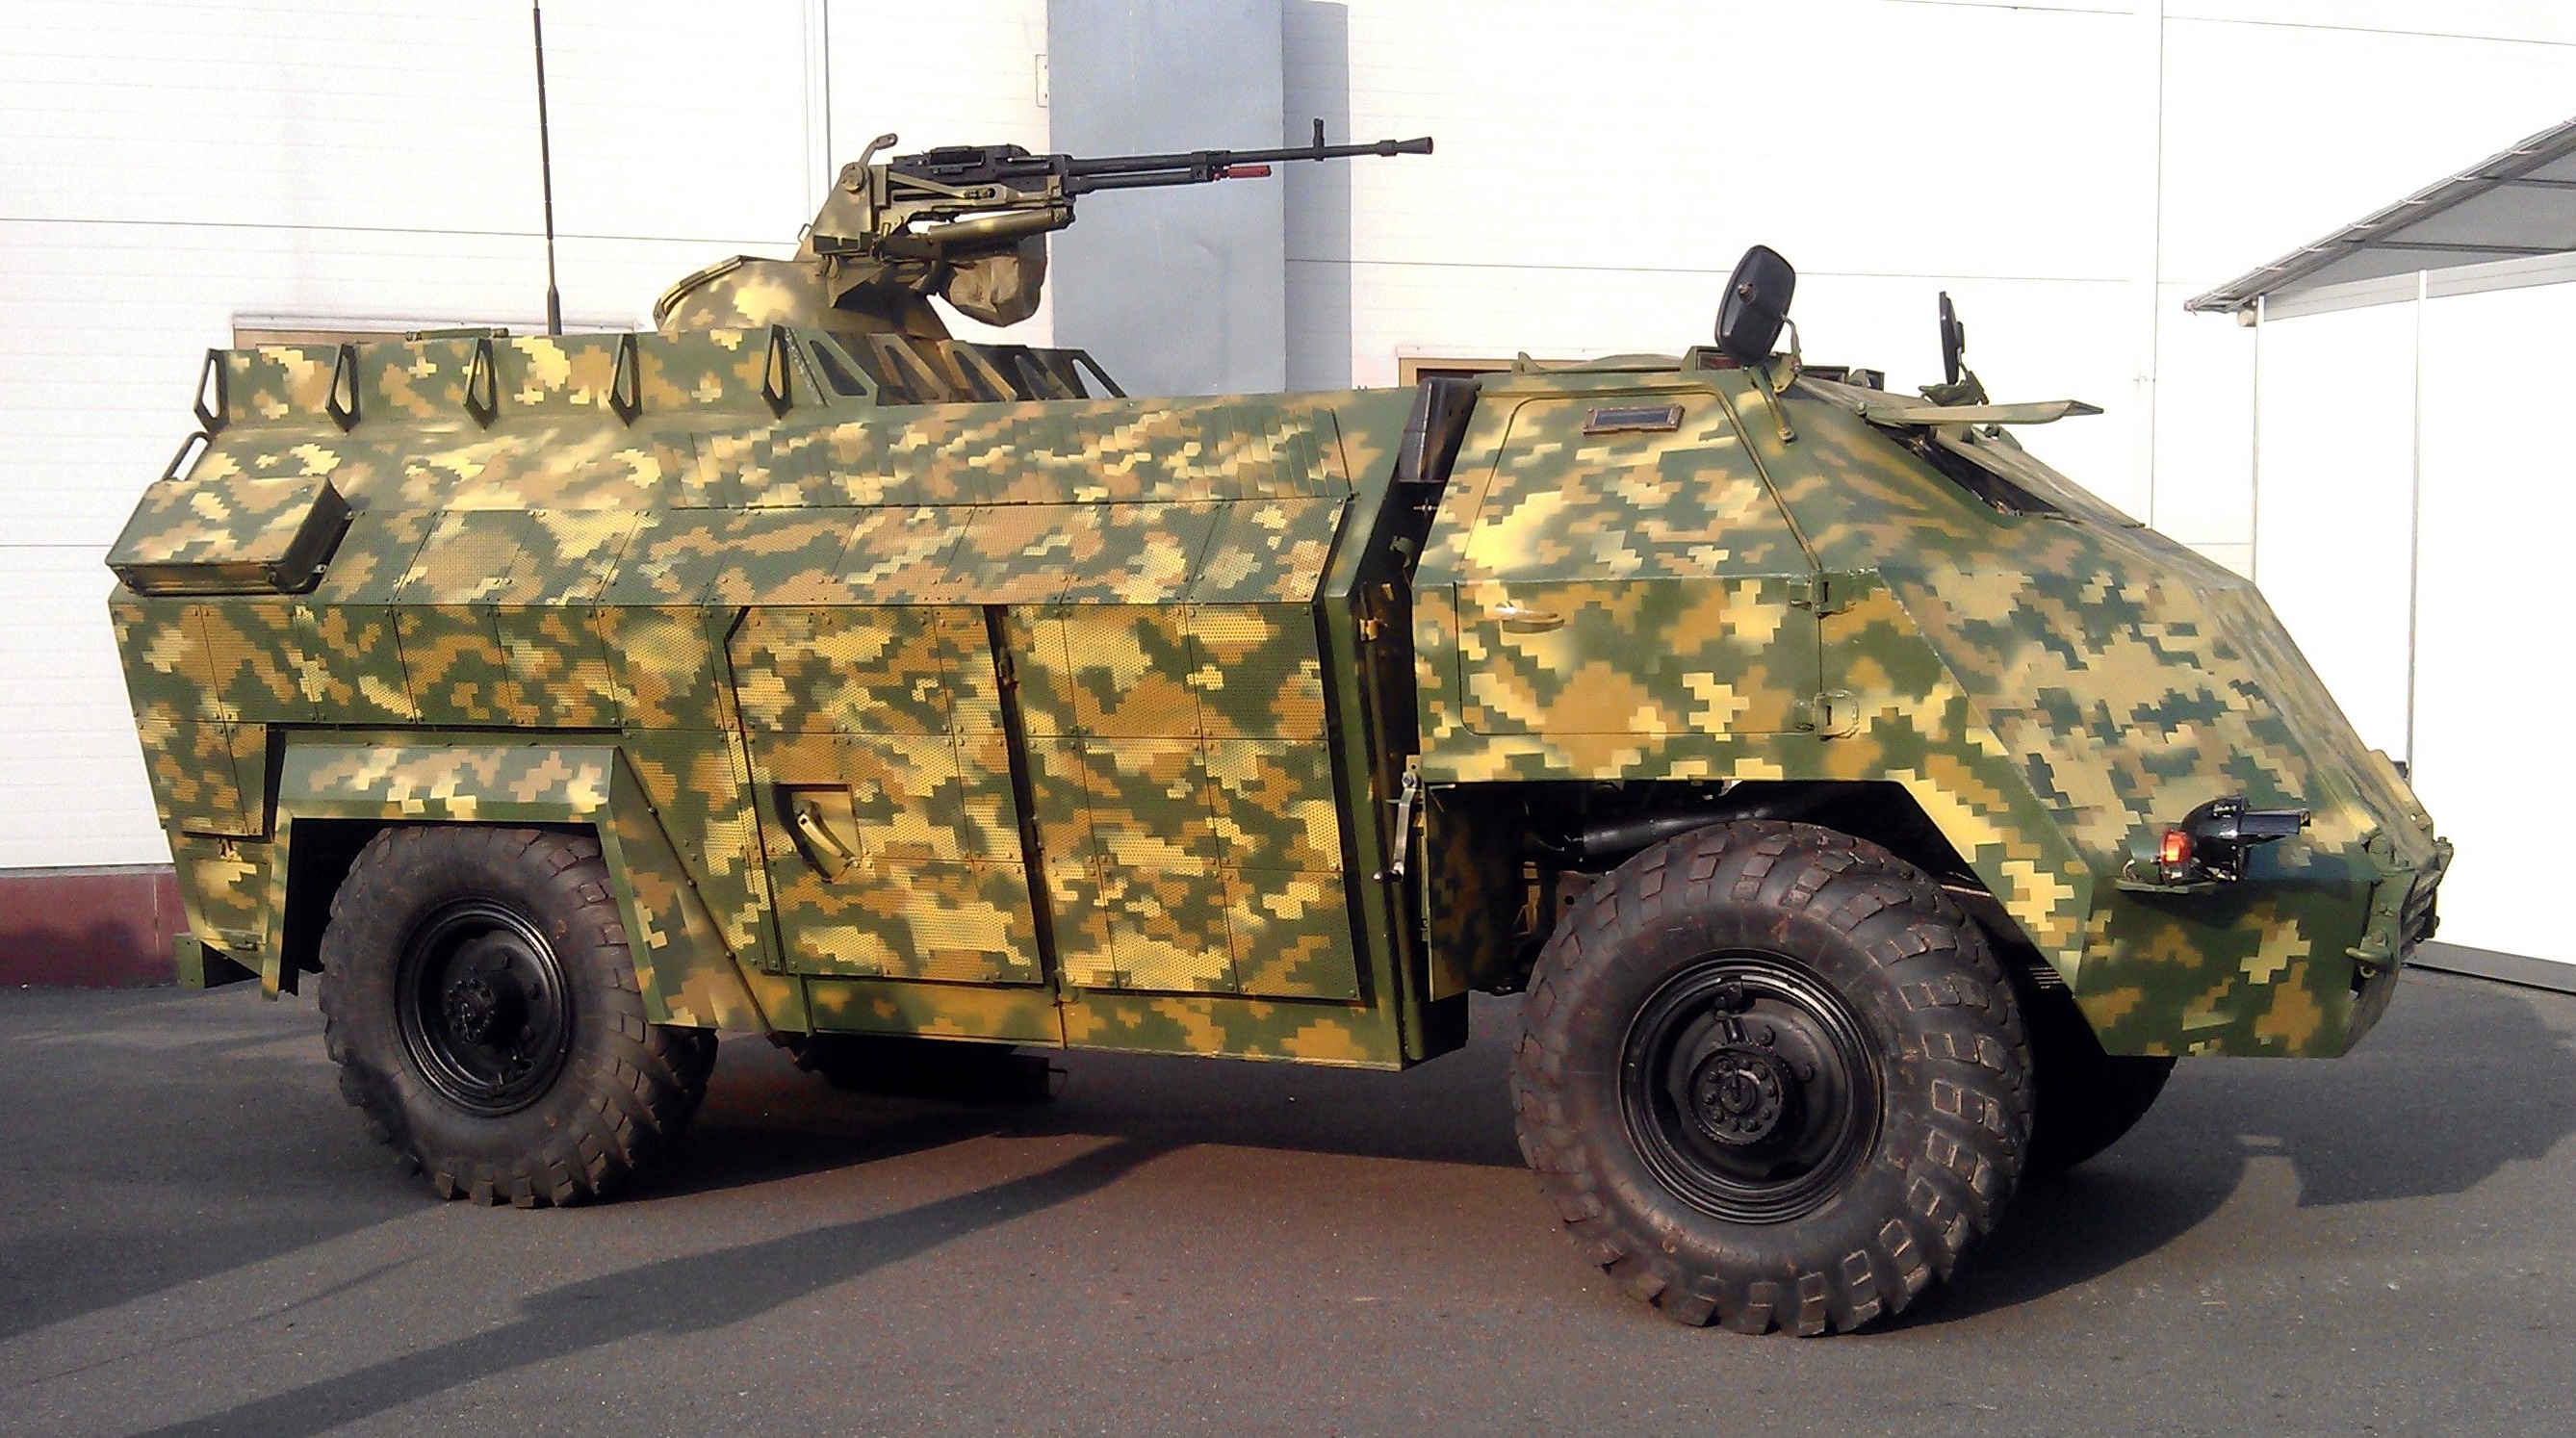 Die Streitkräfte der Ukraine haben im Krieg gegen Russland eine "Geheimwaffe" gezeigt - ein einzigartiges ukrainisches Panzerfahrzeug "Gadfly", das in einer einzigen Kopie erhältlich ist